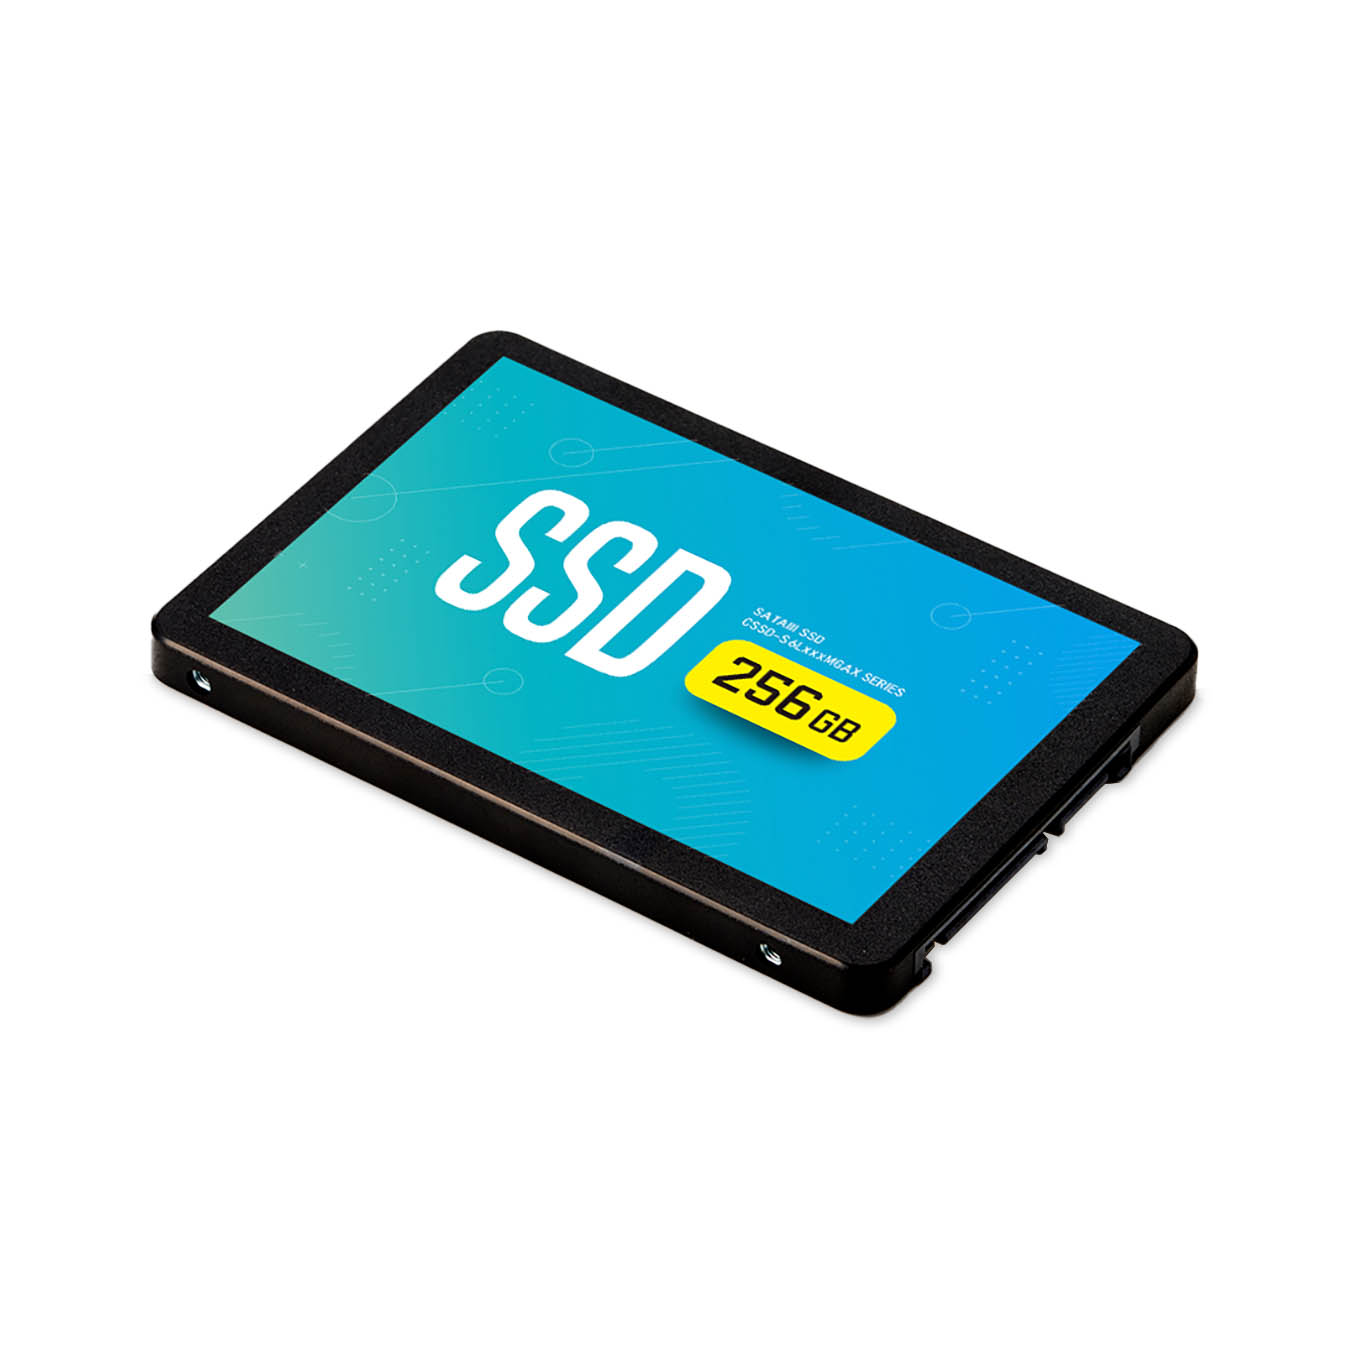 CFD SSD 256GB